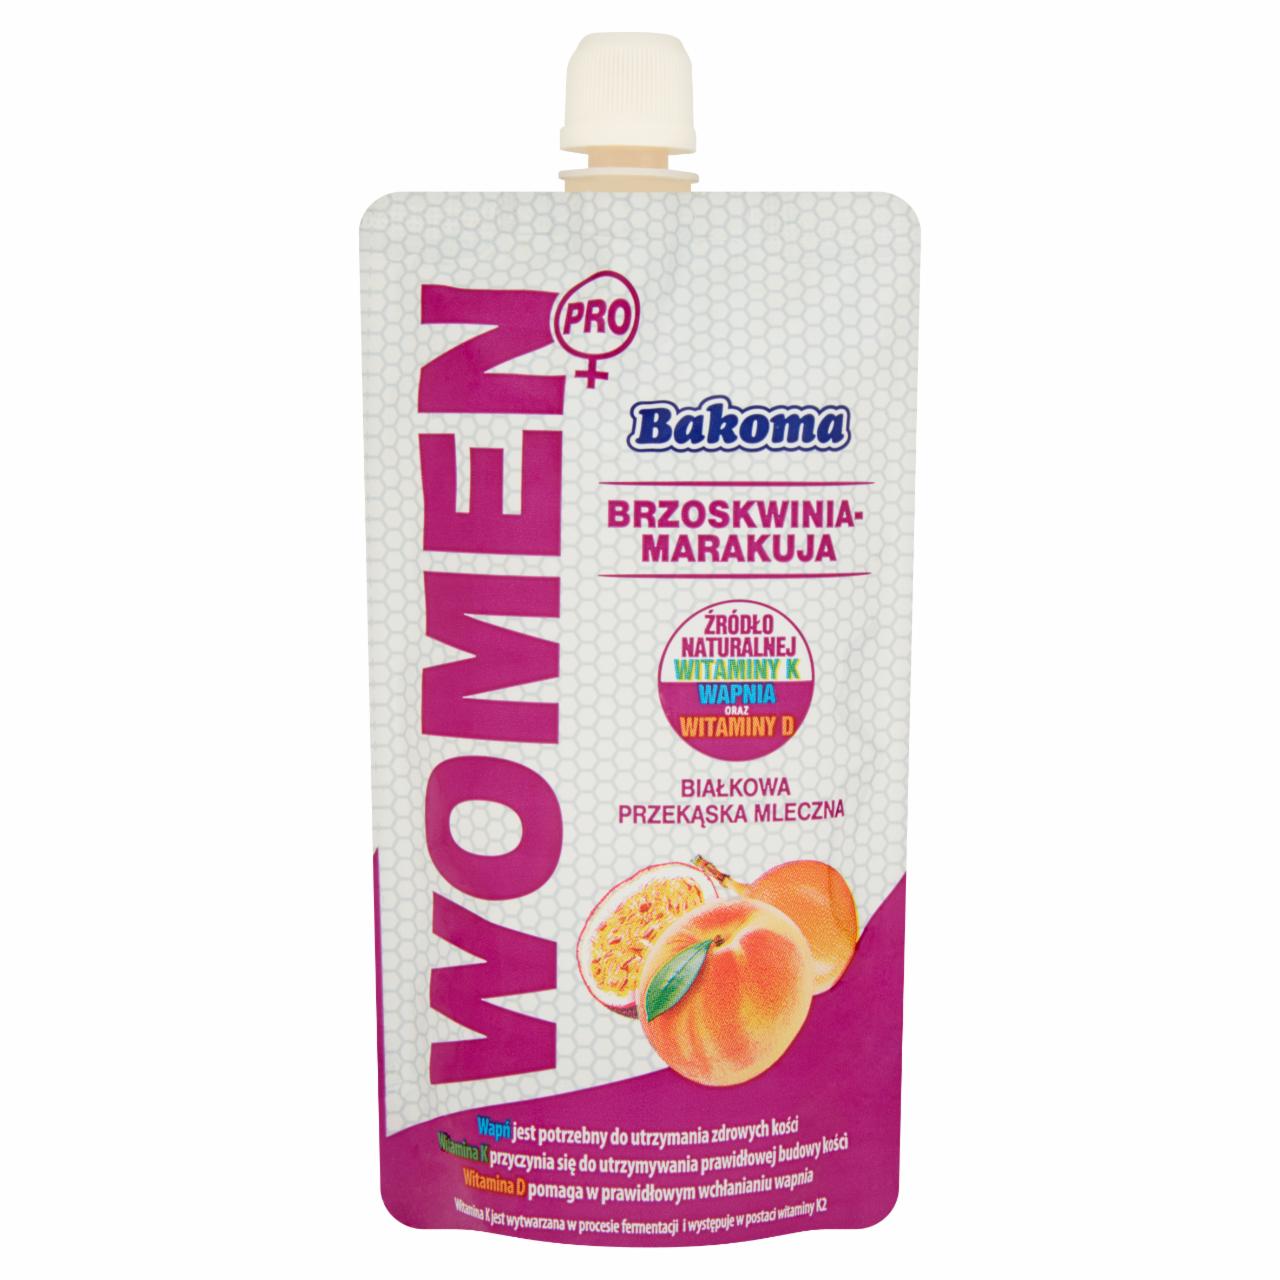 Zdjęcia - Bakoma Women Pro Białkowa przekąska mleczna brzoskwinia-marakuja 120 g